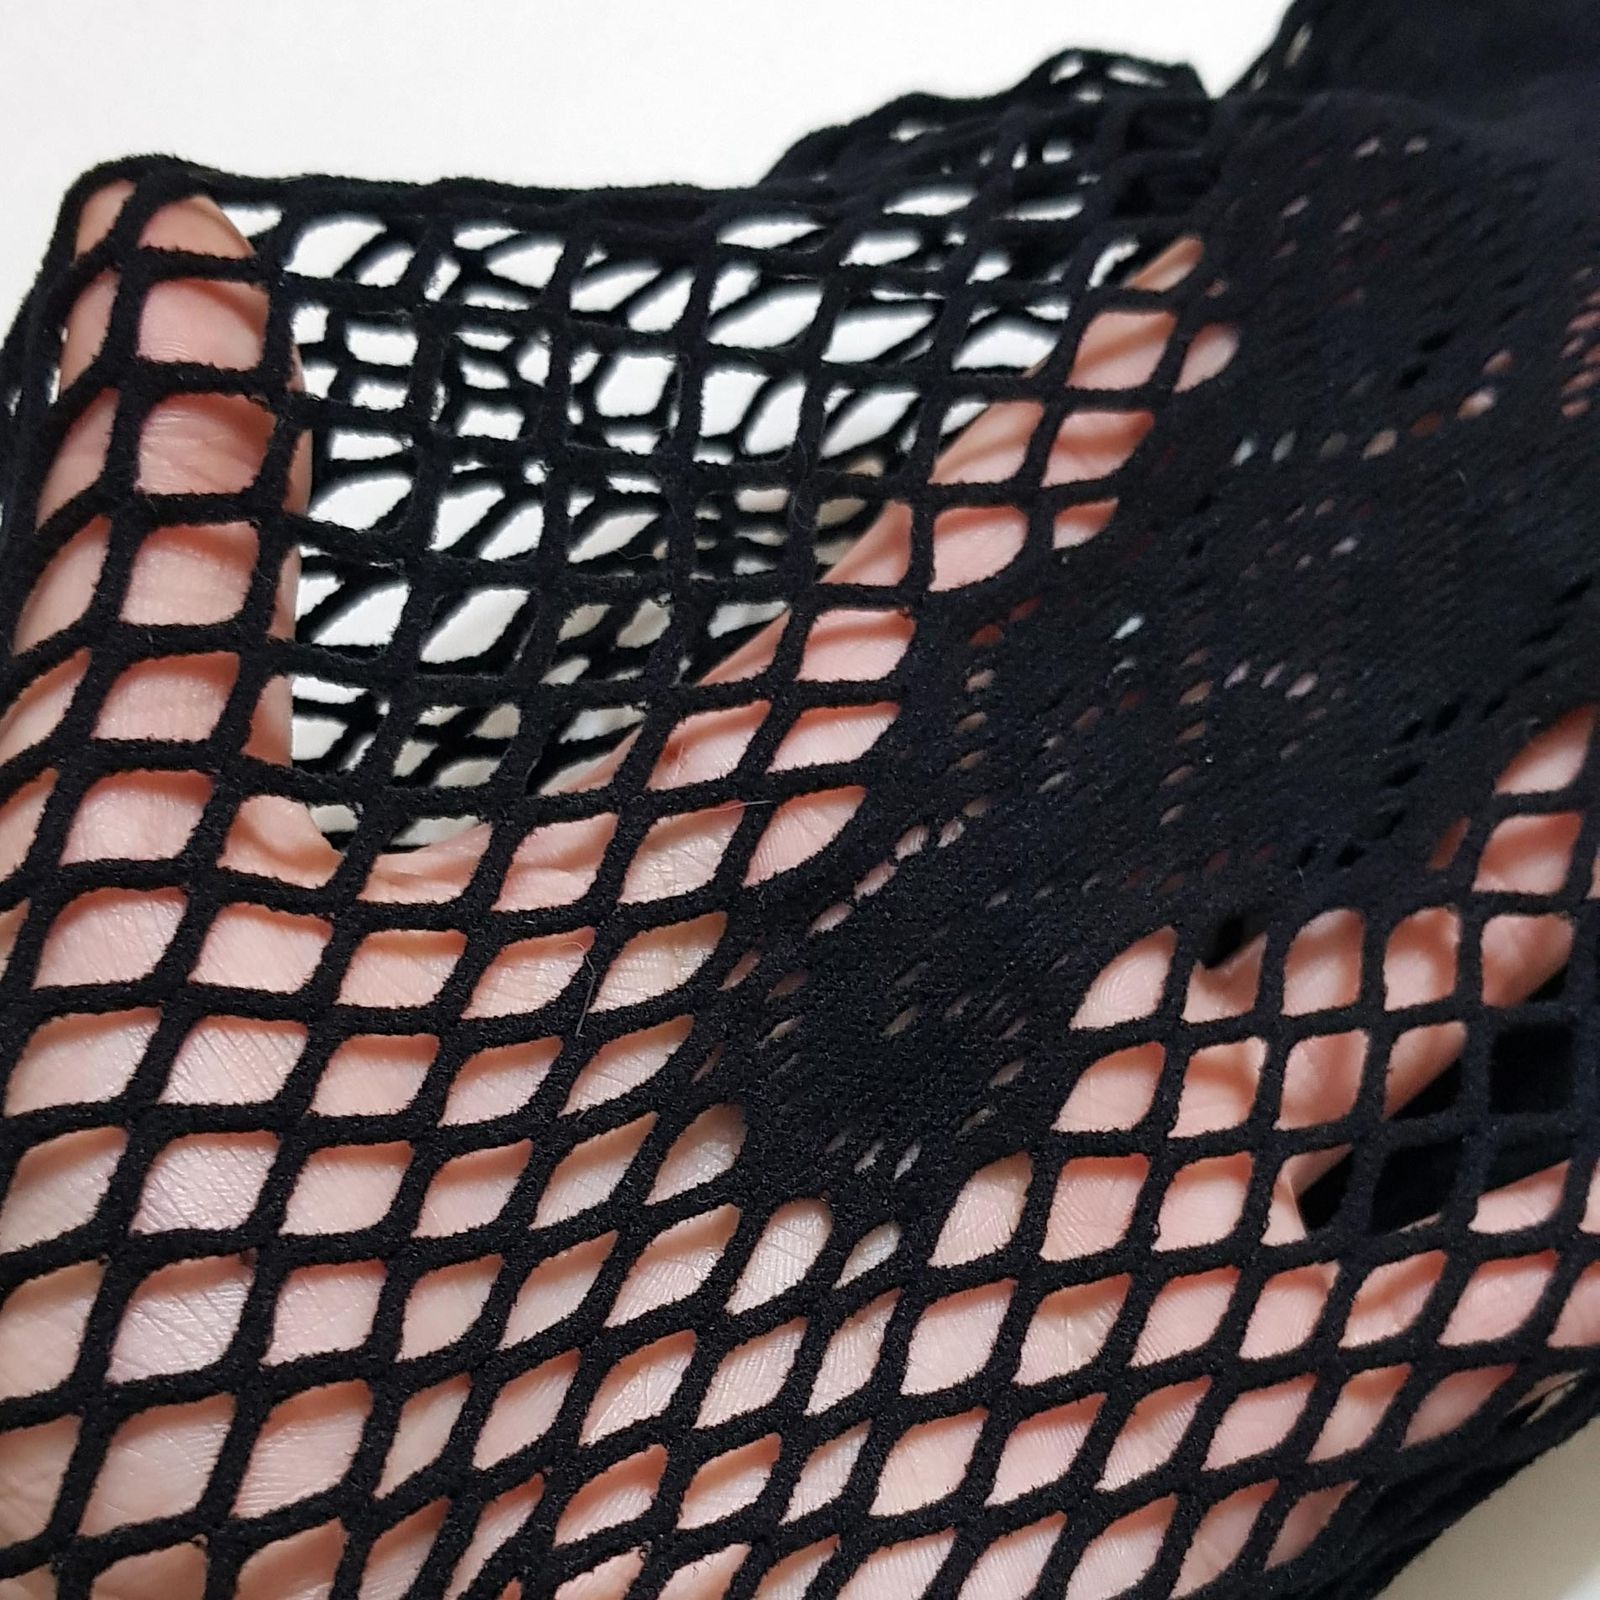 لباس خواب زنانه ماییلدا مدل فاق باز توری کد 4855-S52 رنگ مشکی -  - 3